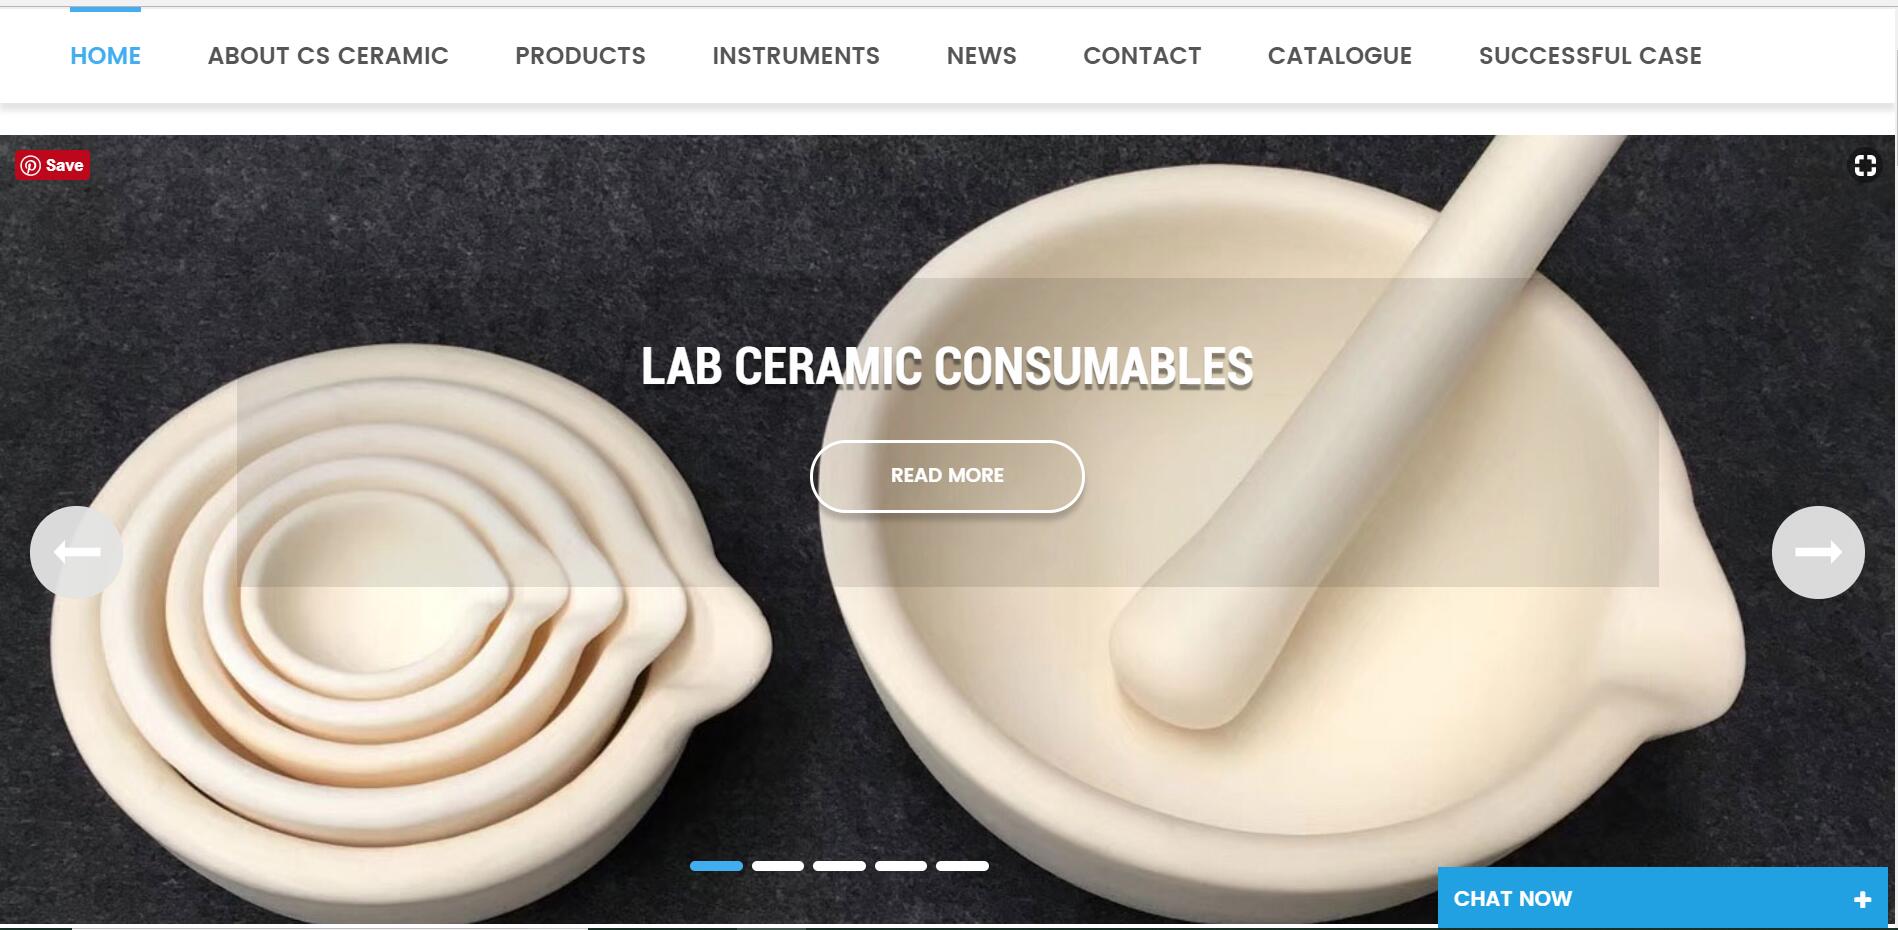 CS Ceramic offizielle Website hat jetzt zehn Arten von Sprachschnittstellen